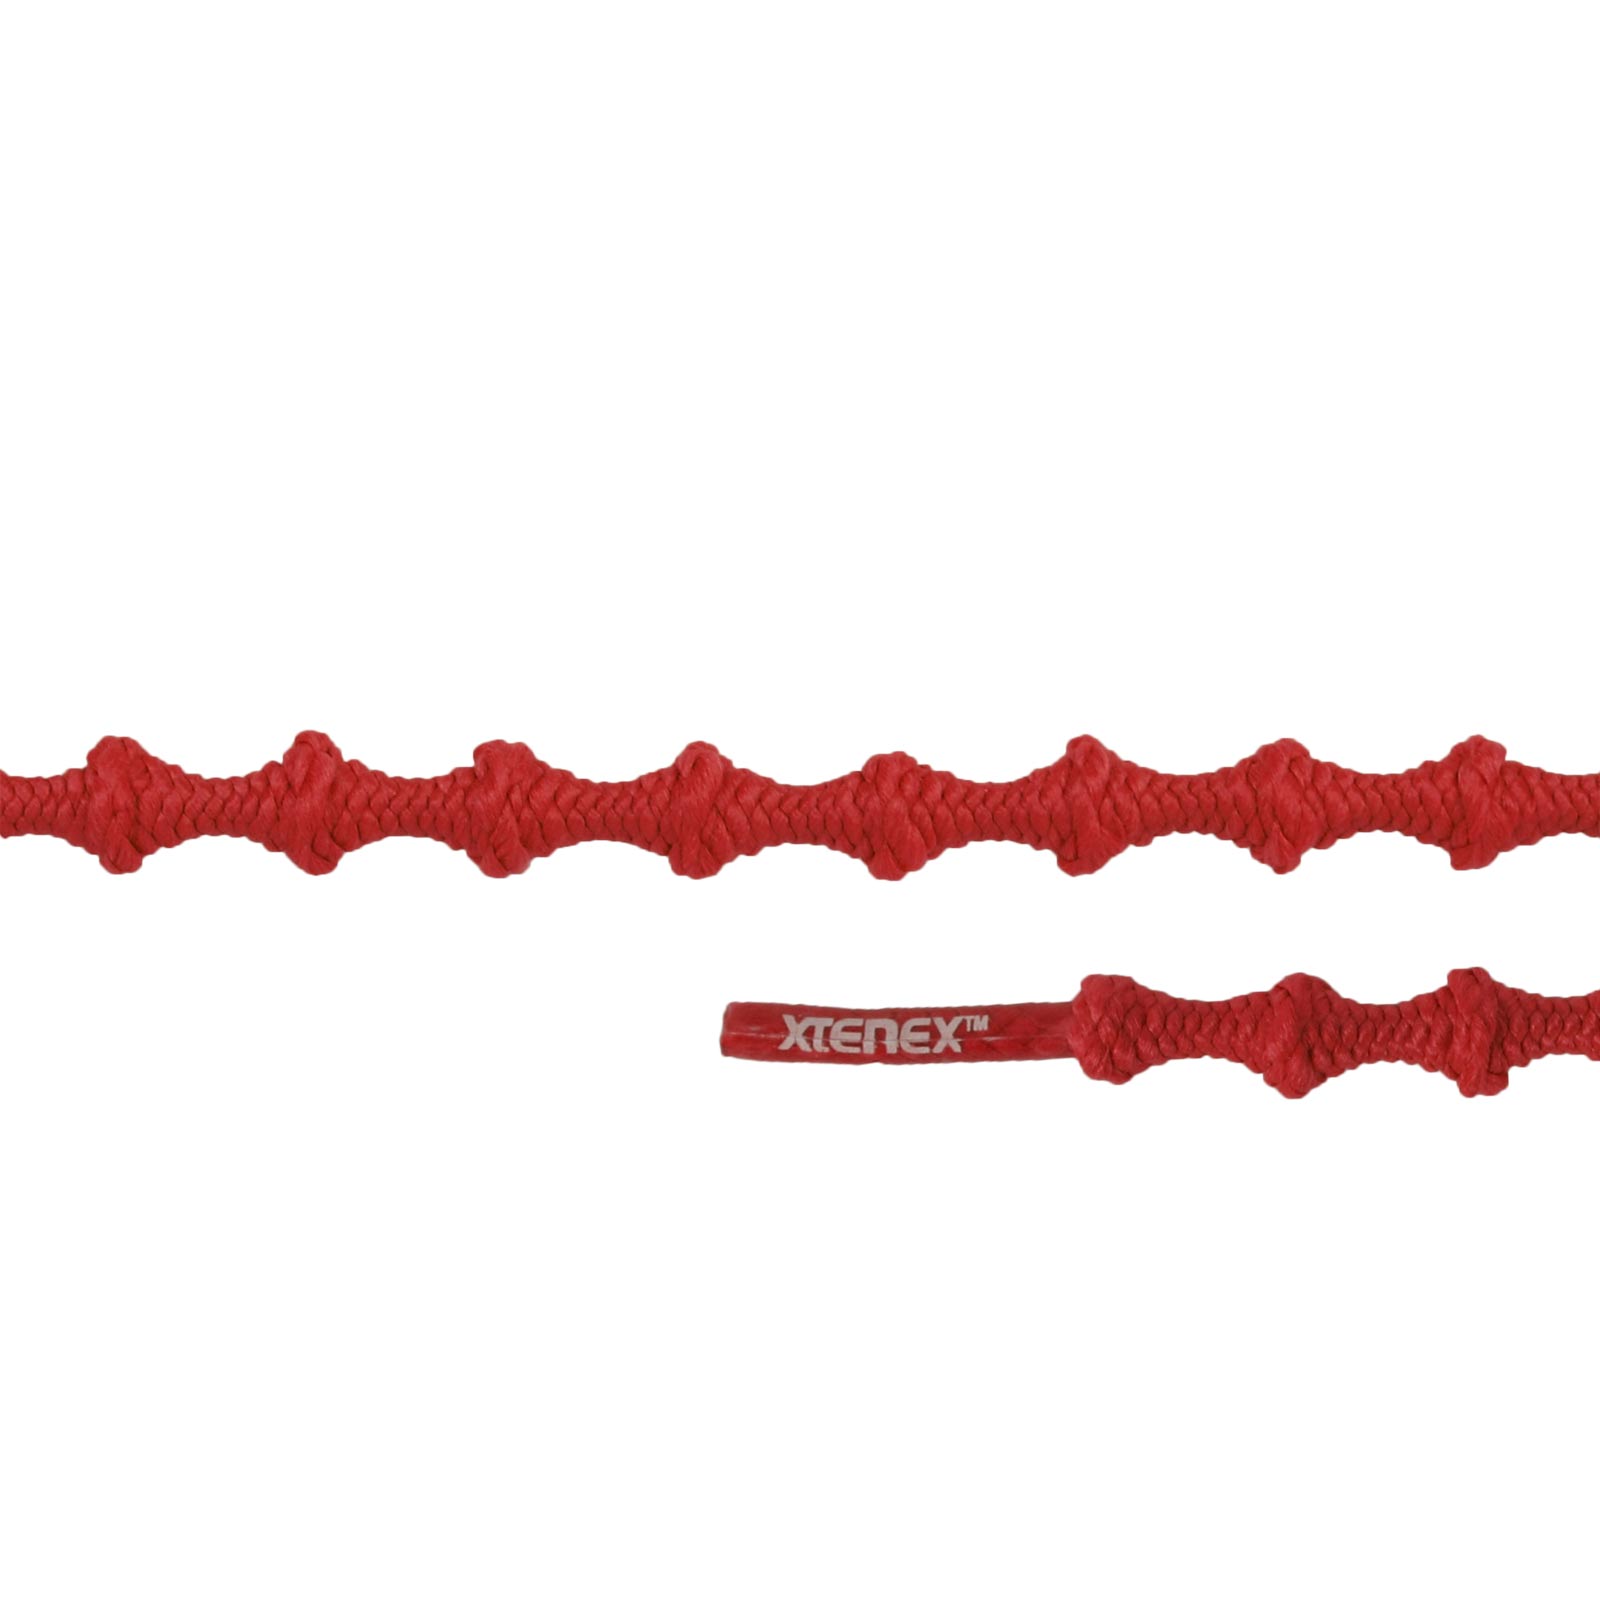 Productfoto van Xtenex Sport Veters - 75cm - rood